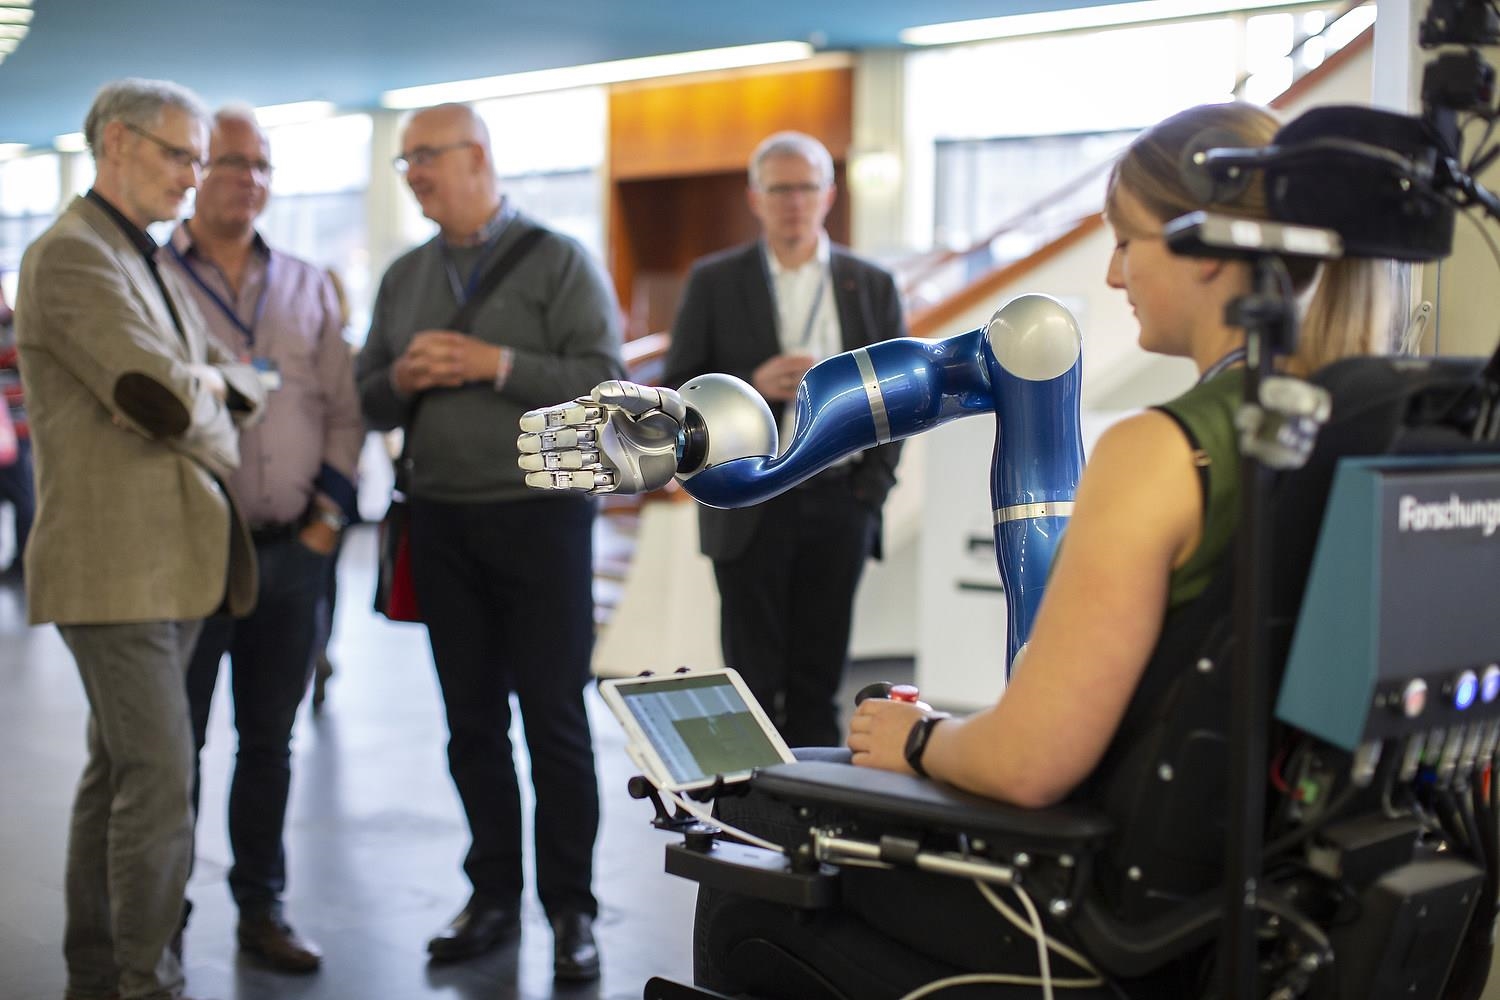 Frau testet vor Zuschauern einen Roboterarm auf dem Caritaskongress 2019 (DCV/Janine Schmitz)